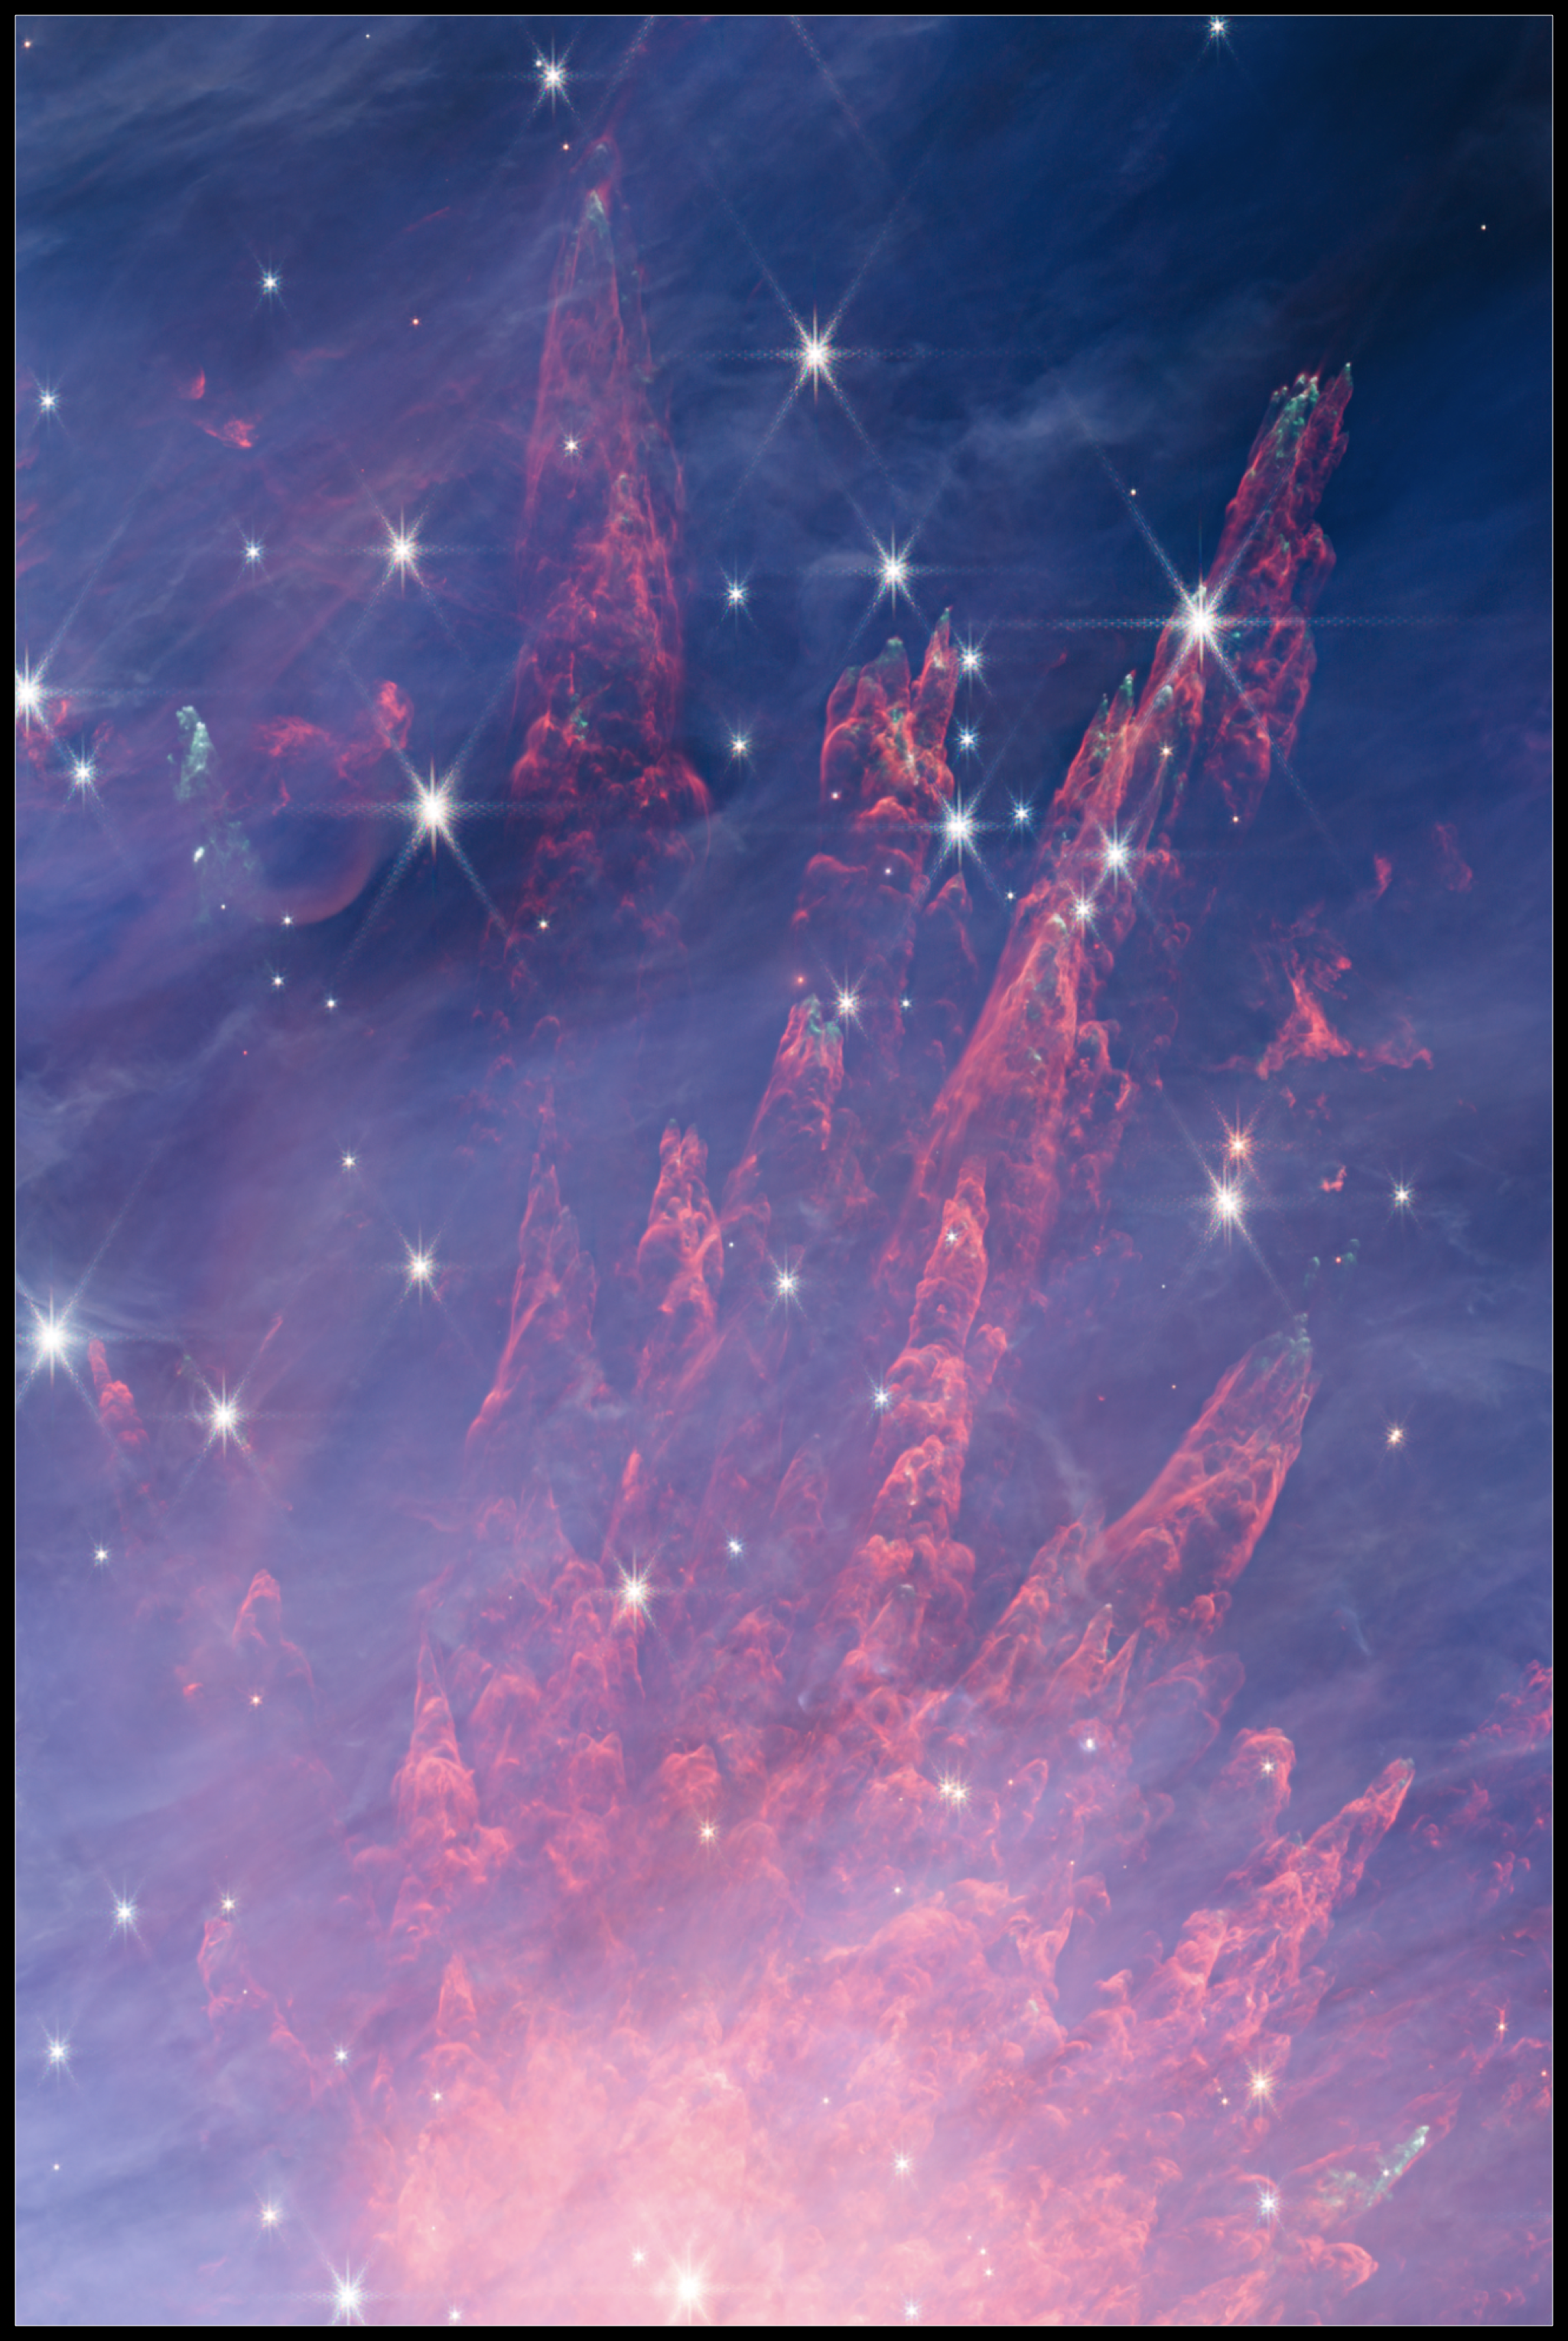 Kosmiczne fajerwerki na mozaice zdjęć M42 z Teleskopu Webba